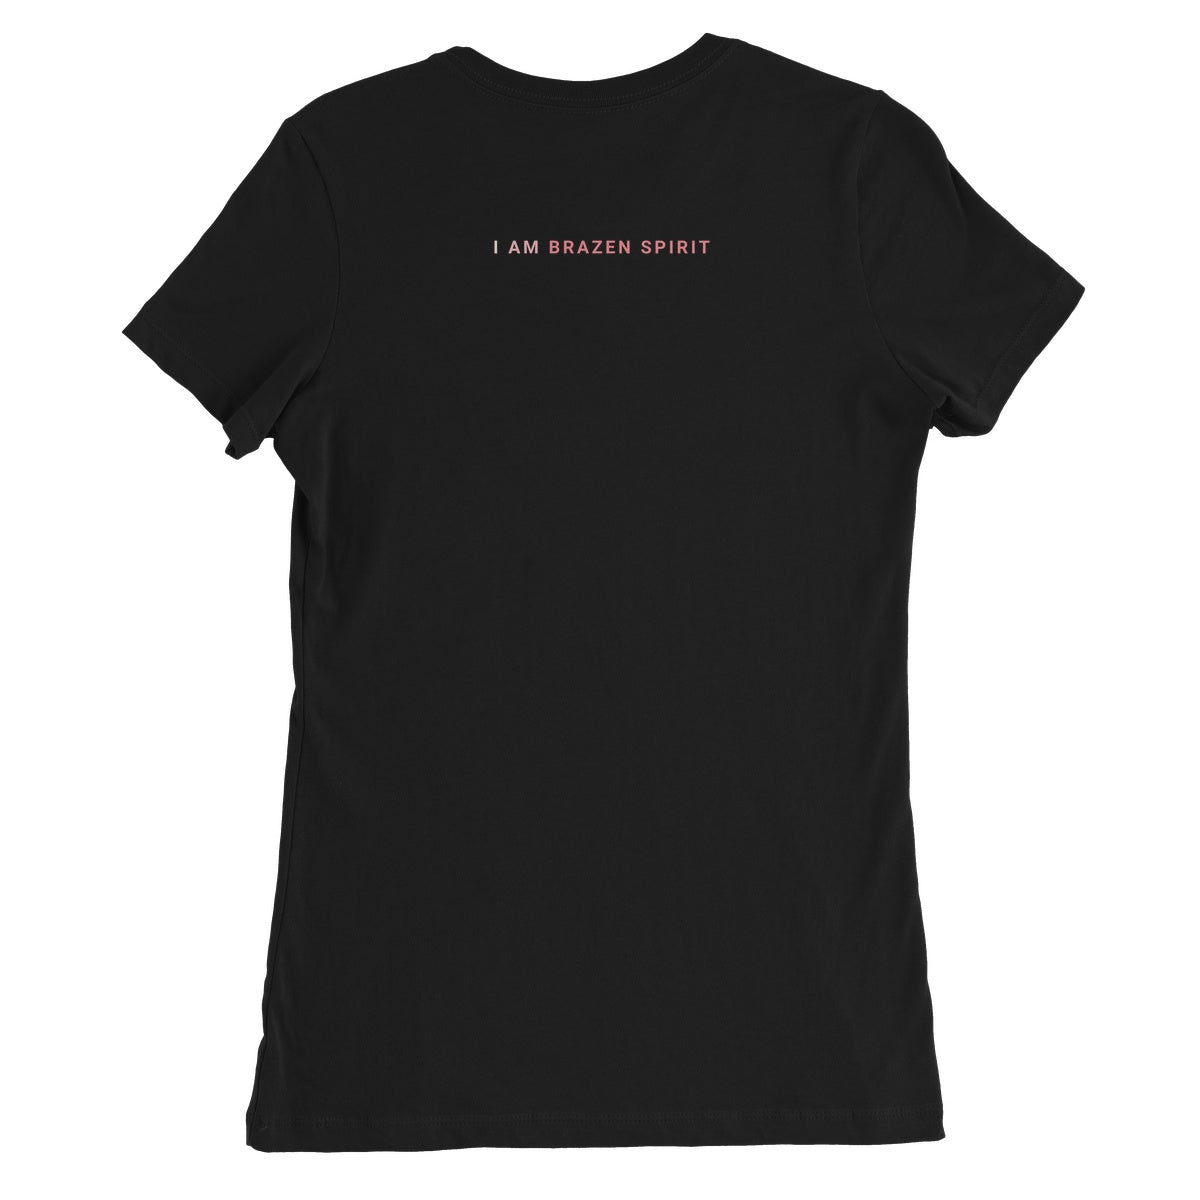 Grateful Heart, Positive Mind - Black - Women's T-Shirt